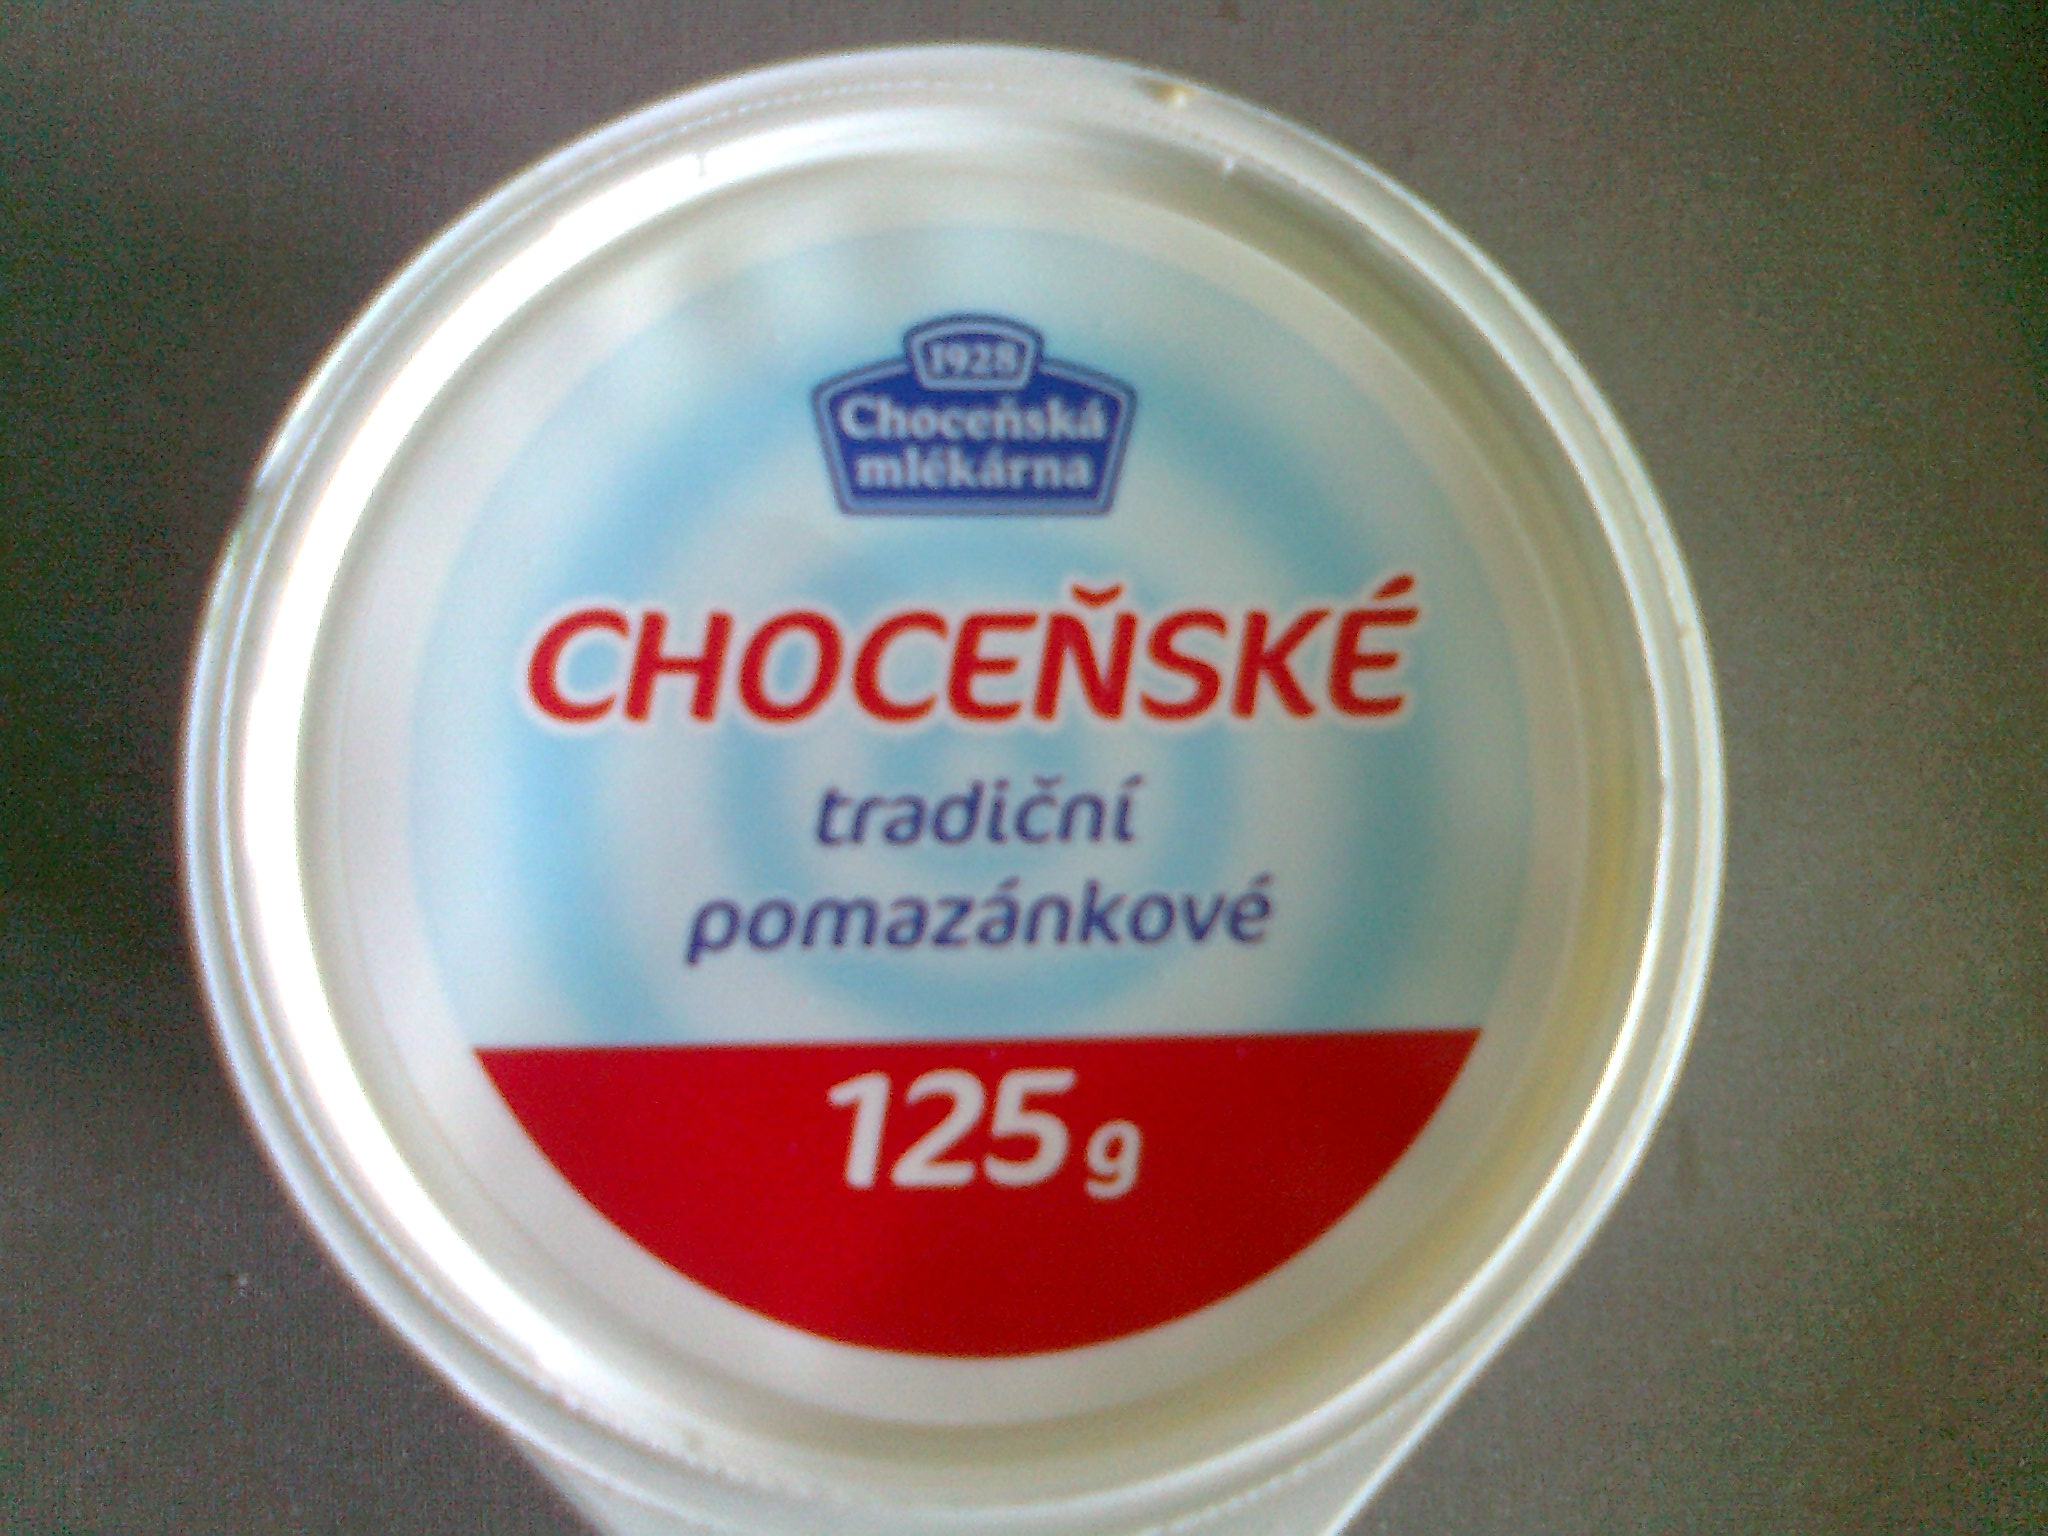 Choceňské tradiční pomazánkové (máslo)